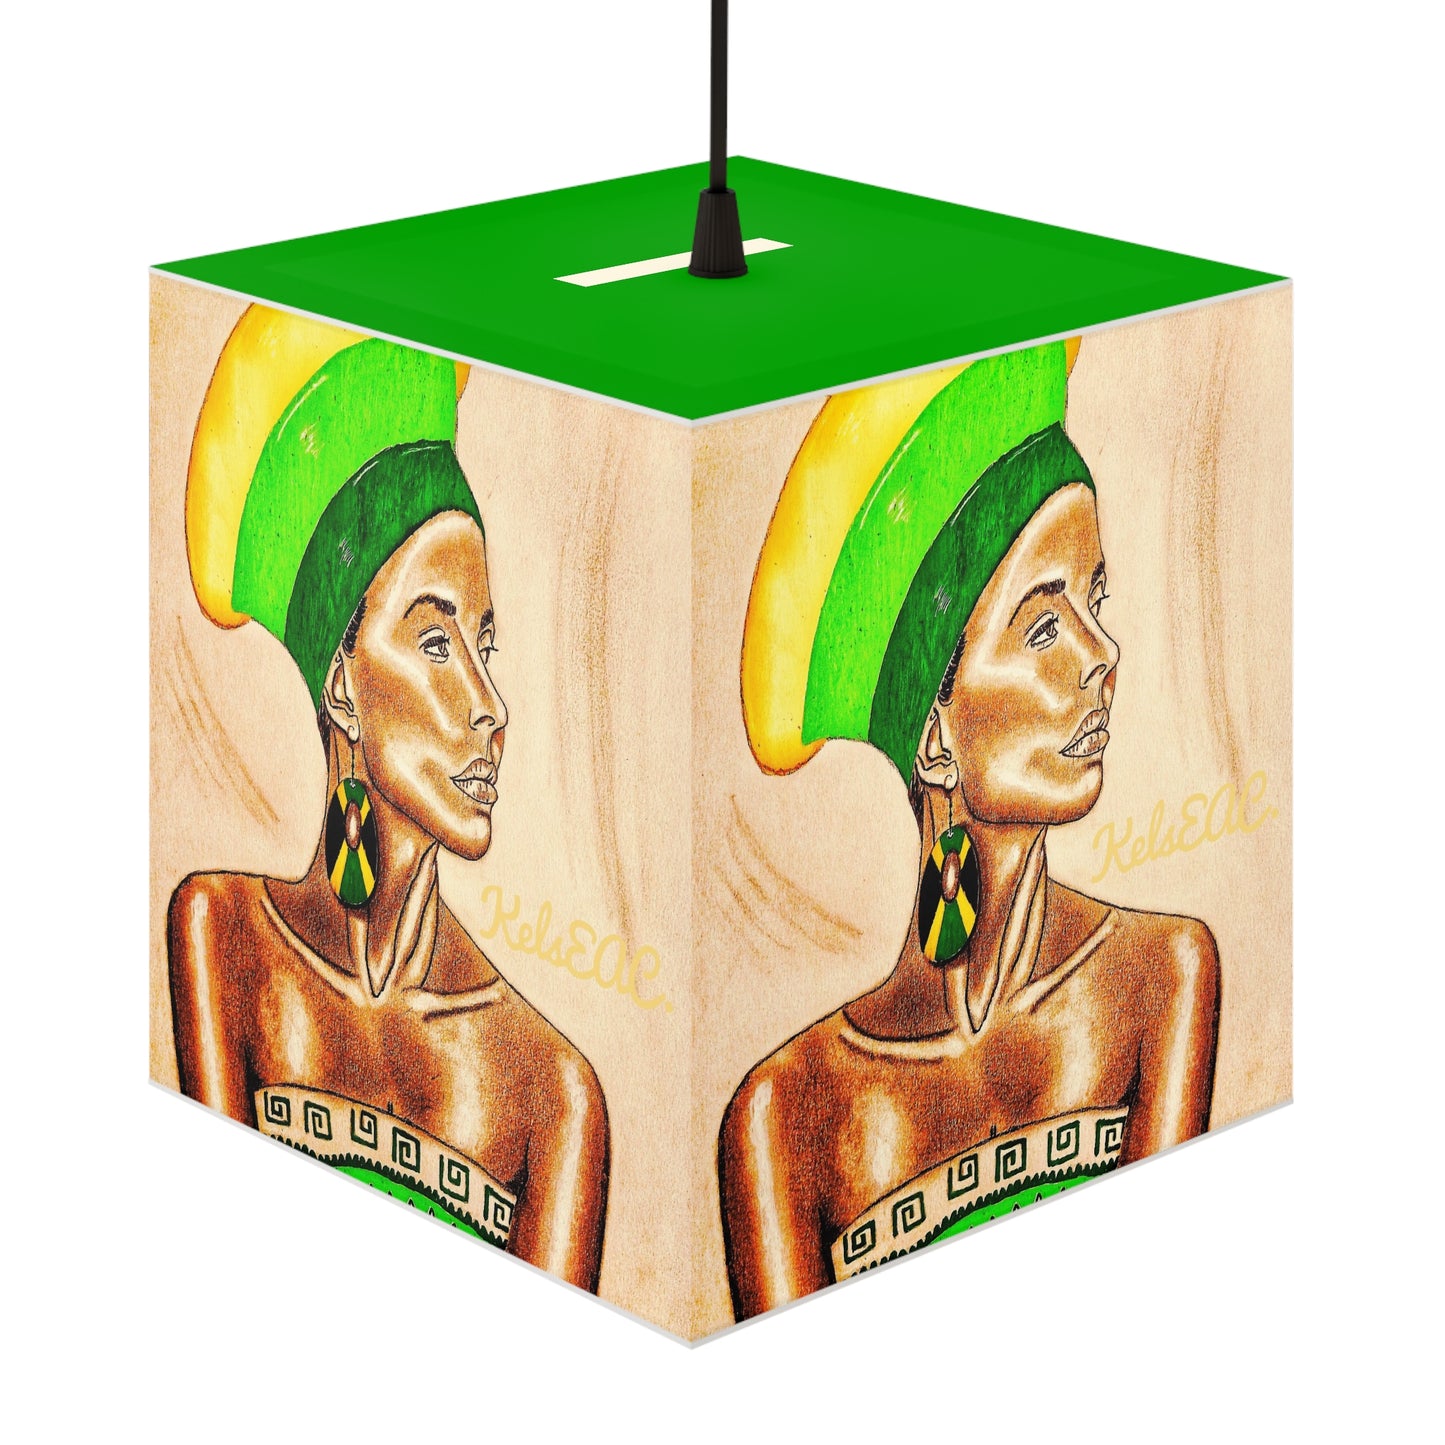 Alluring Green Light Cube Lamp